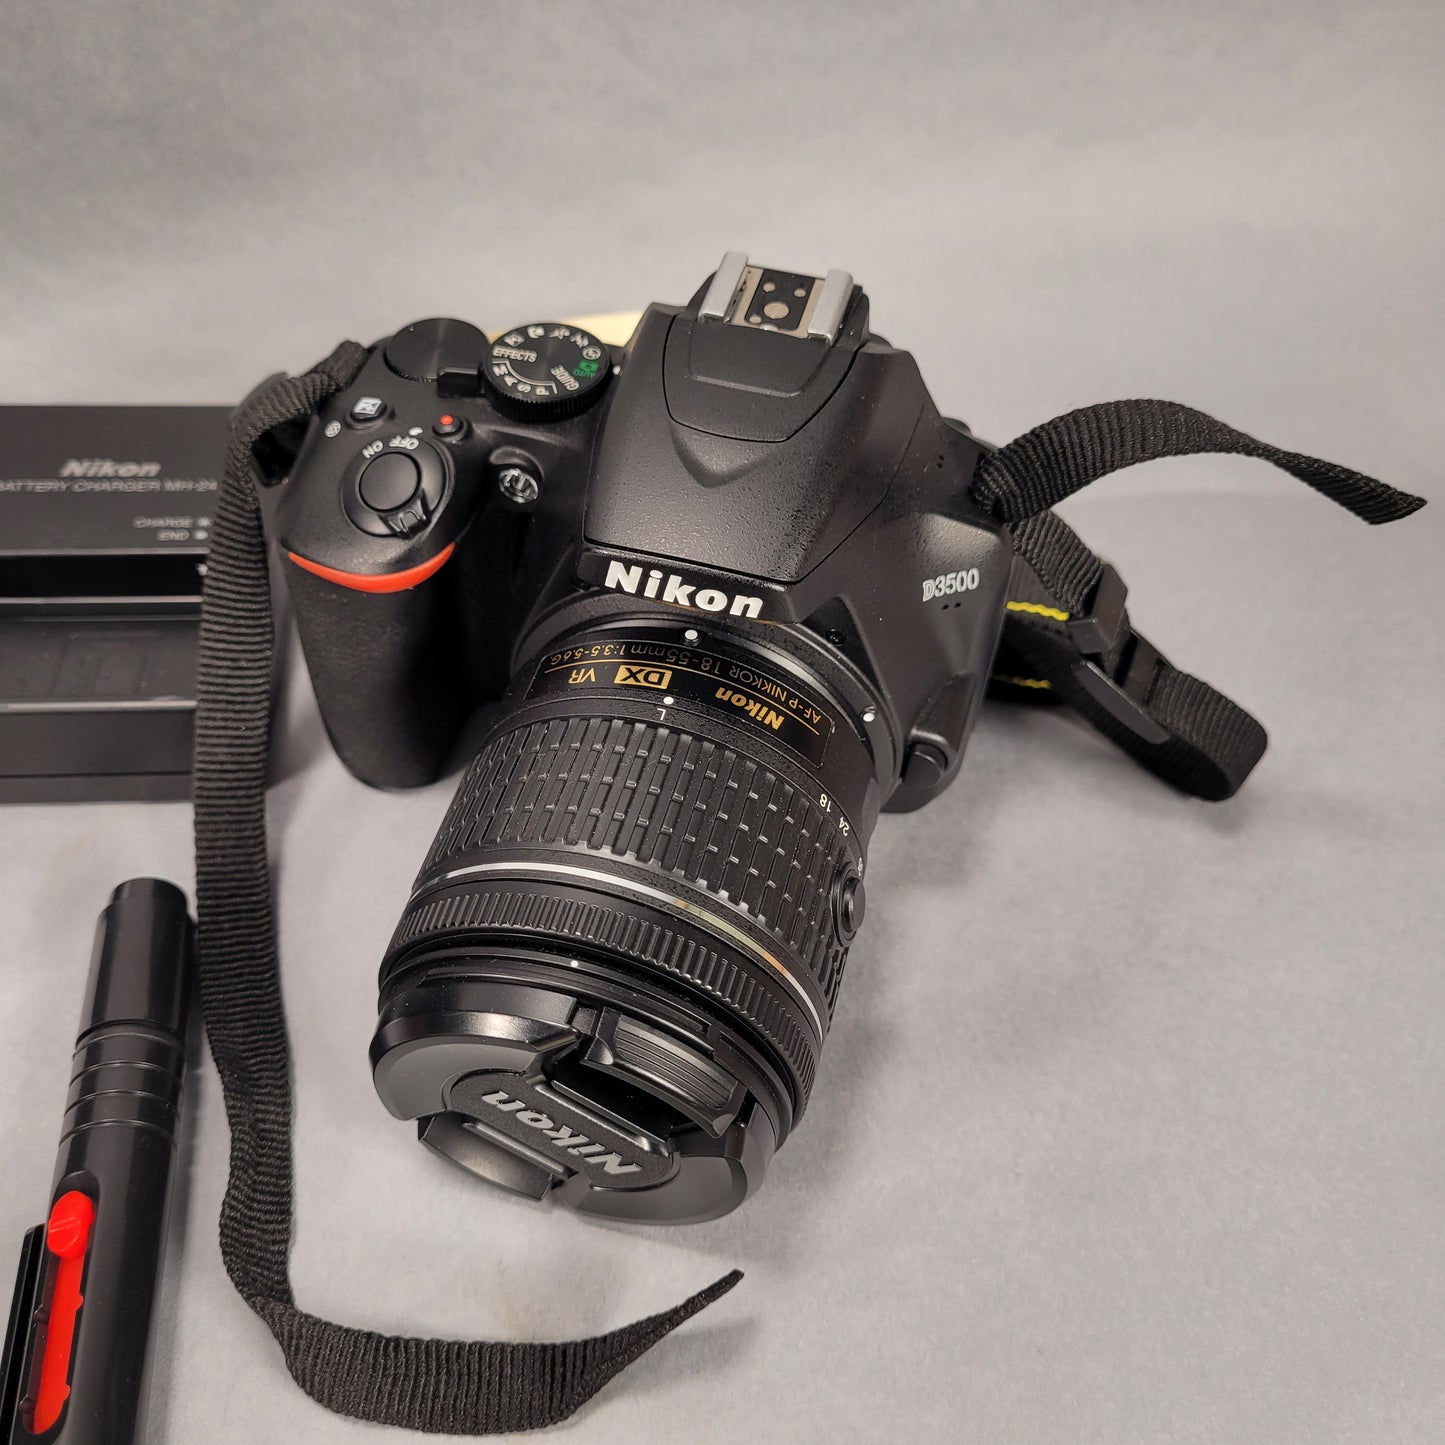 Nikon D3500 18-55mm VR Kit Shutter Count 2080